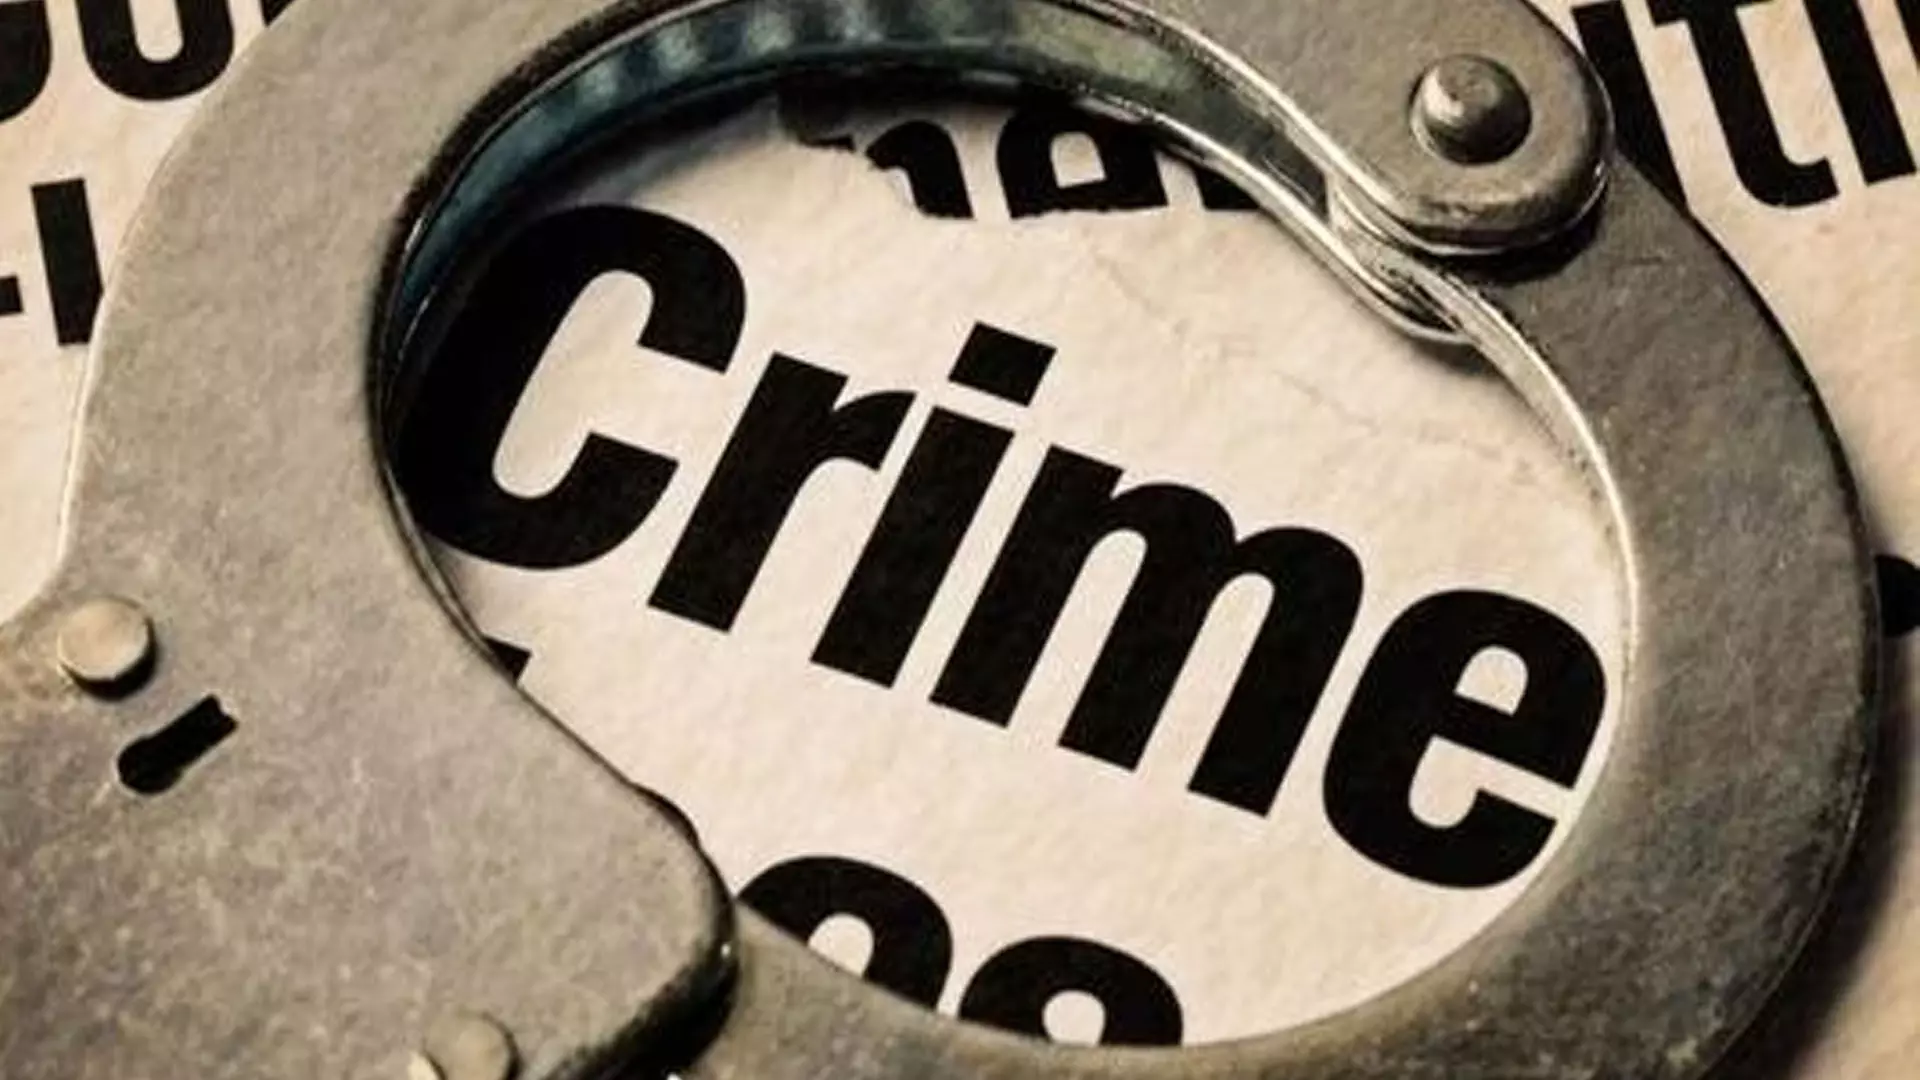 CHANDIGAD: सेक्टर 18 मार्केट में युवक पर लोहे से हमला करने के आरोप में 3 गिरफ्तार